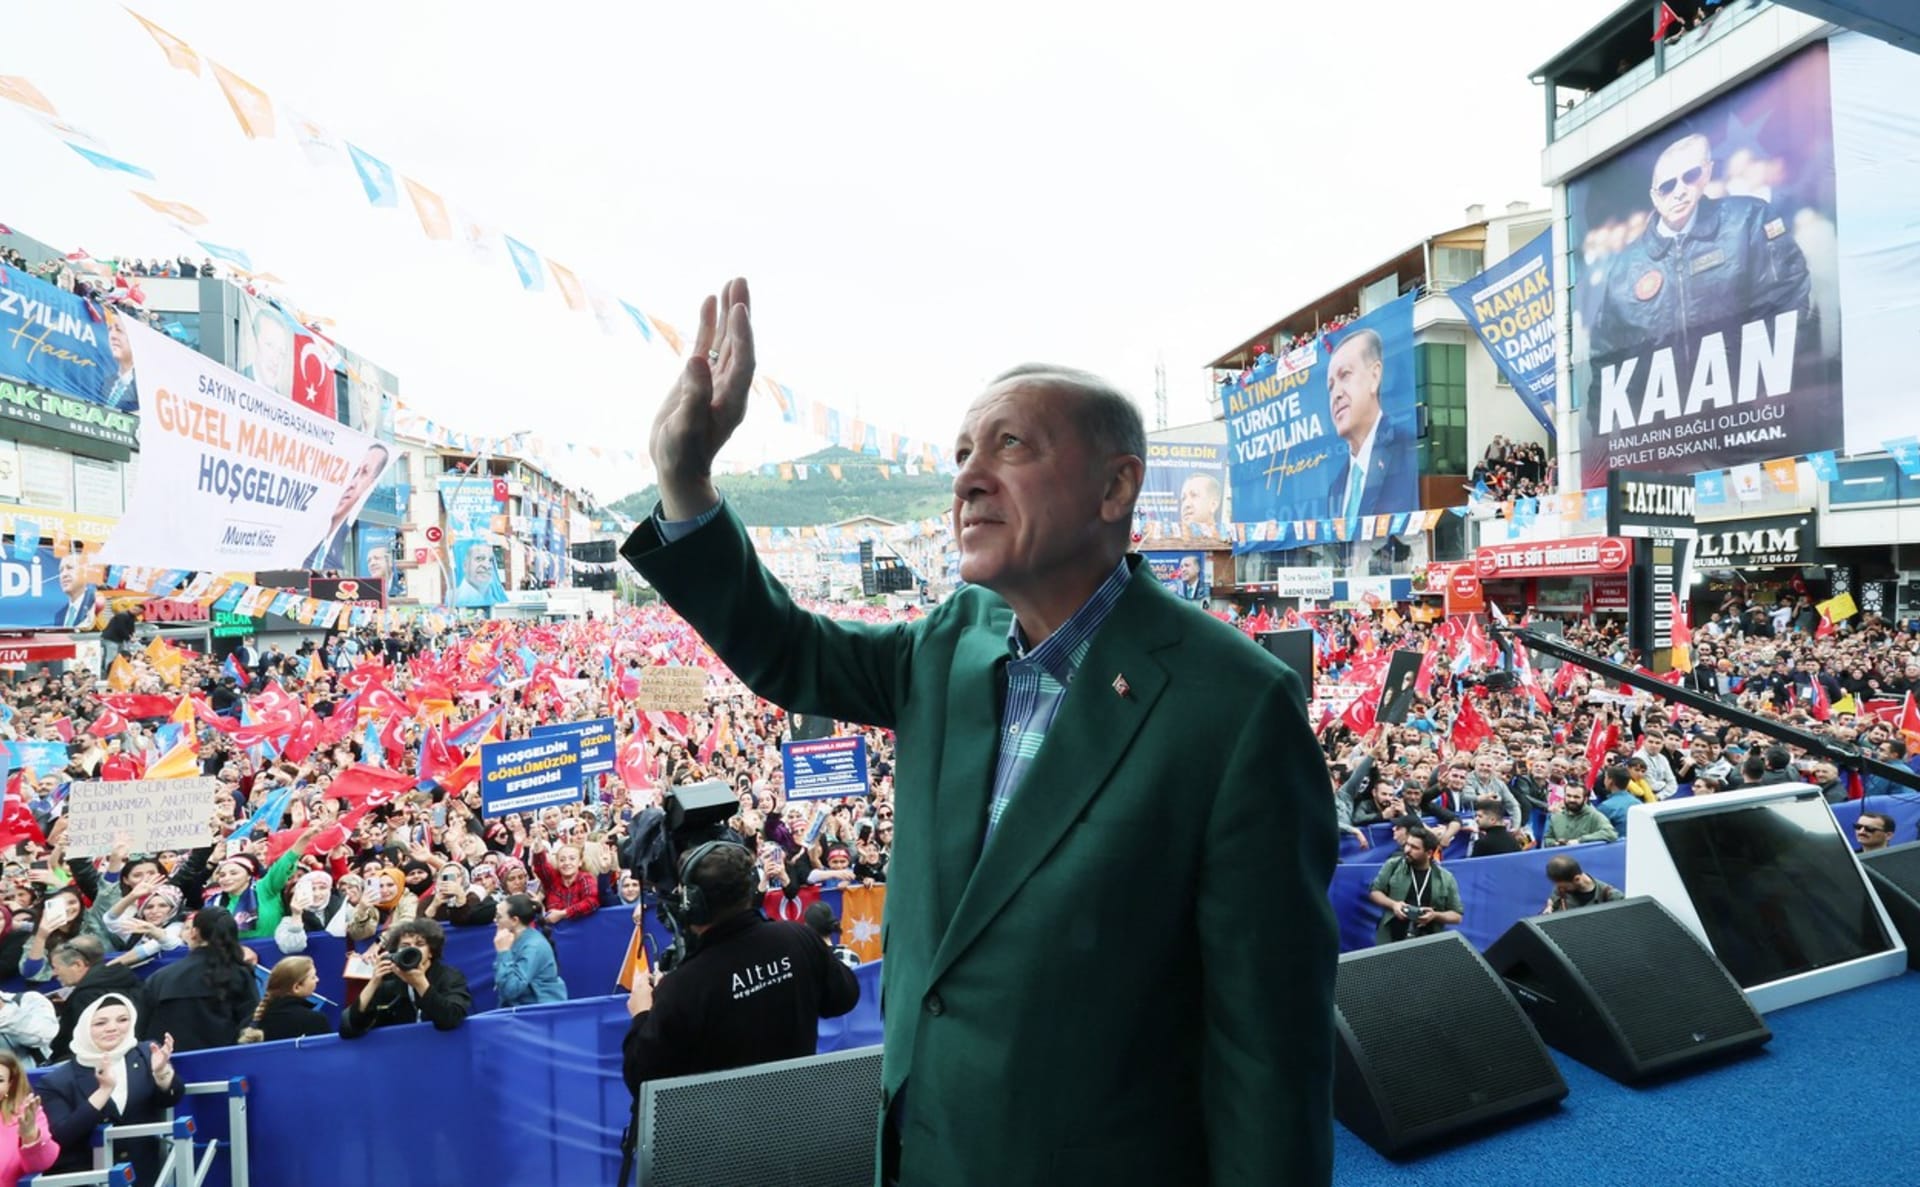 Turecký prezident Recep Tayyip Erdogan může v nadcházejících volbách prohrát. Průzkumy jsou velmi těsné.